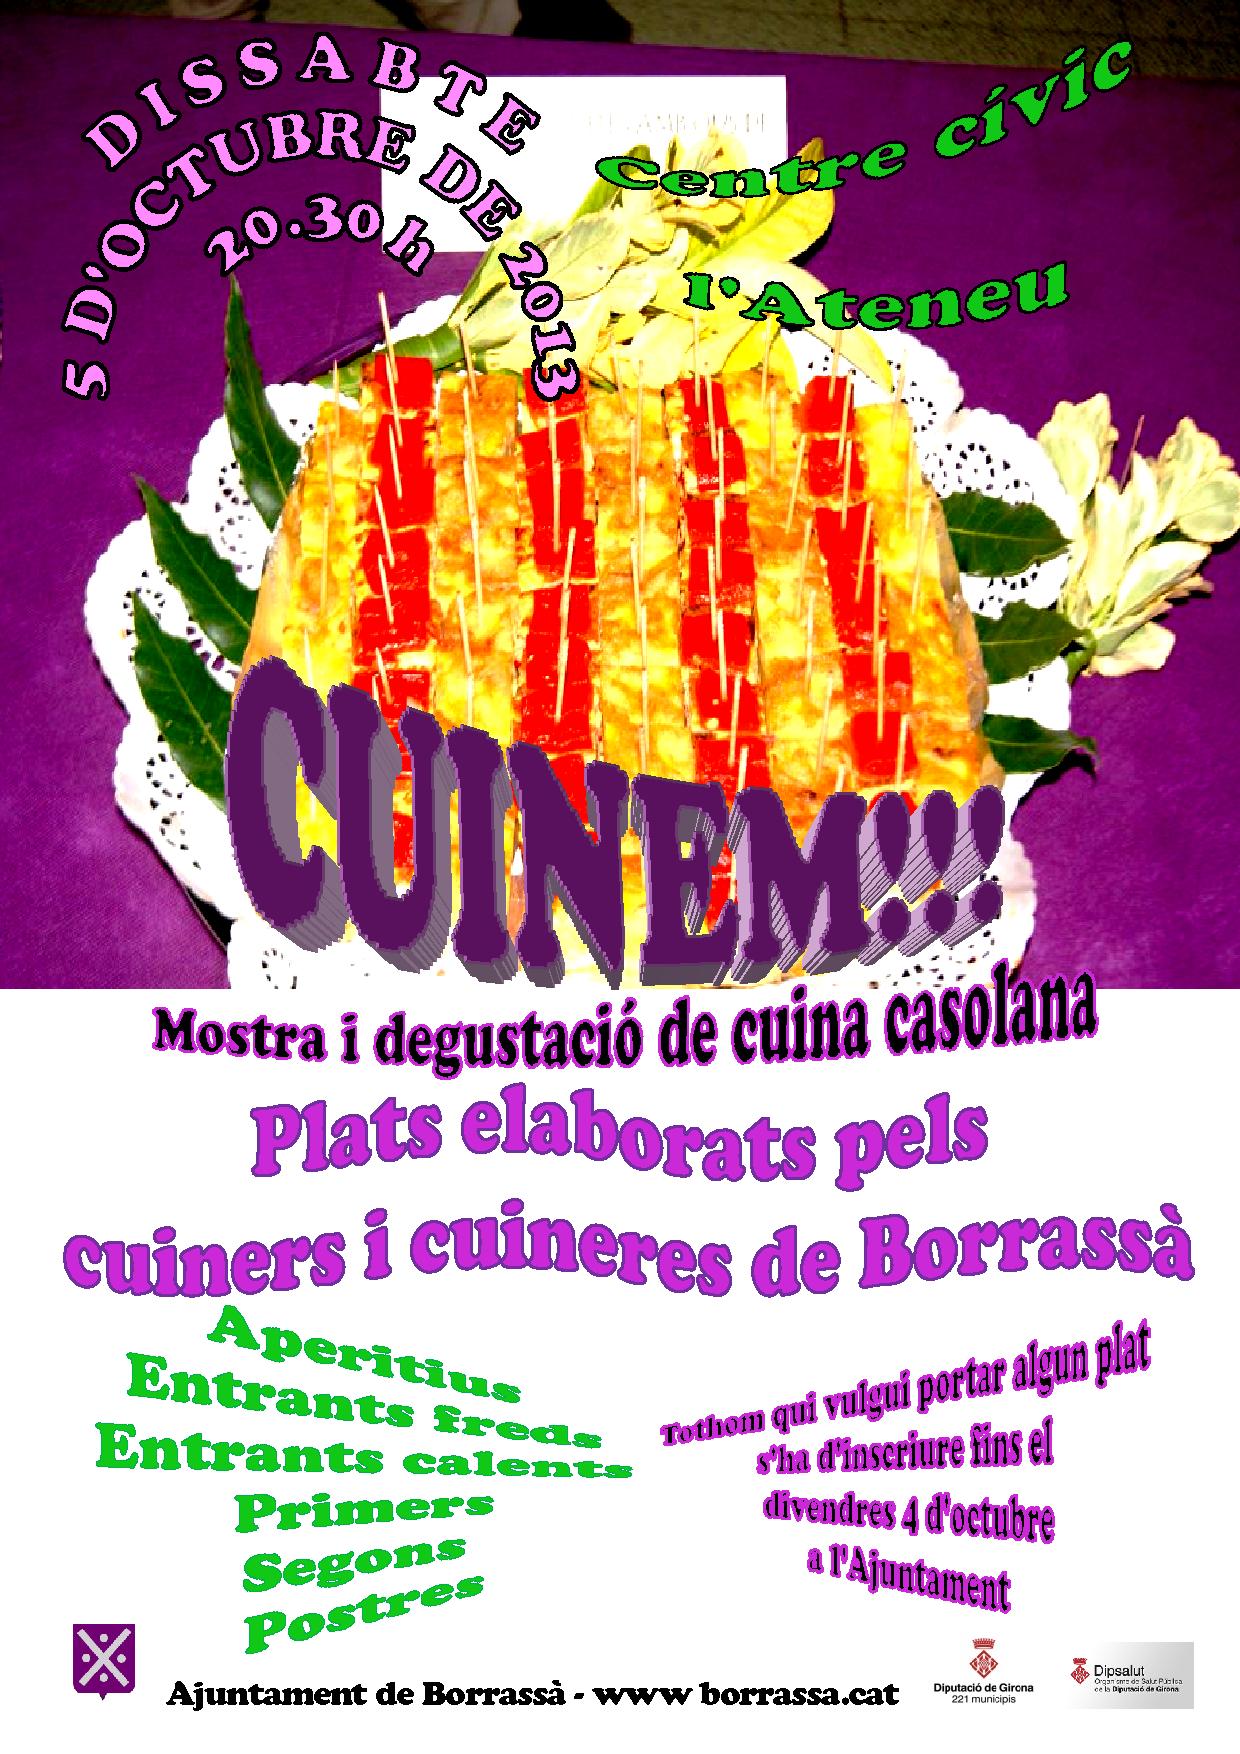 El proper dissabte, 5 d'octubre, el centre cívic l'Ateneu serà l'escenari d'una nova edició del Cuinem!!!. Aquesta mostra i degustació de cuina casolana, elaborada pels cuiners i les cuineres de Borrassà, obrirà les portes a 2/4 de 9 del vespre.